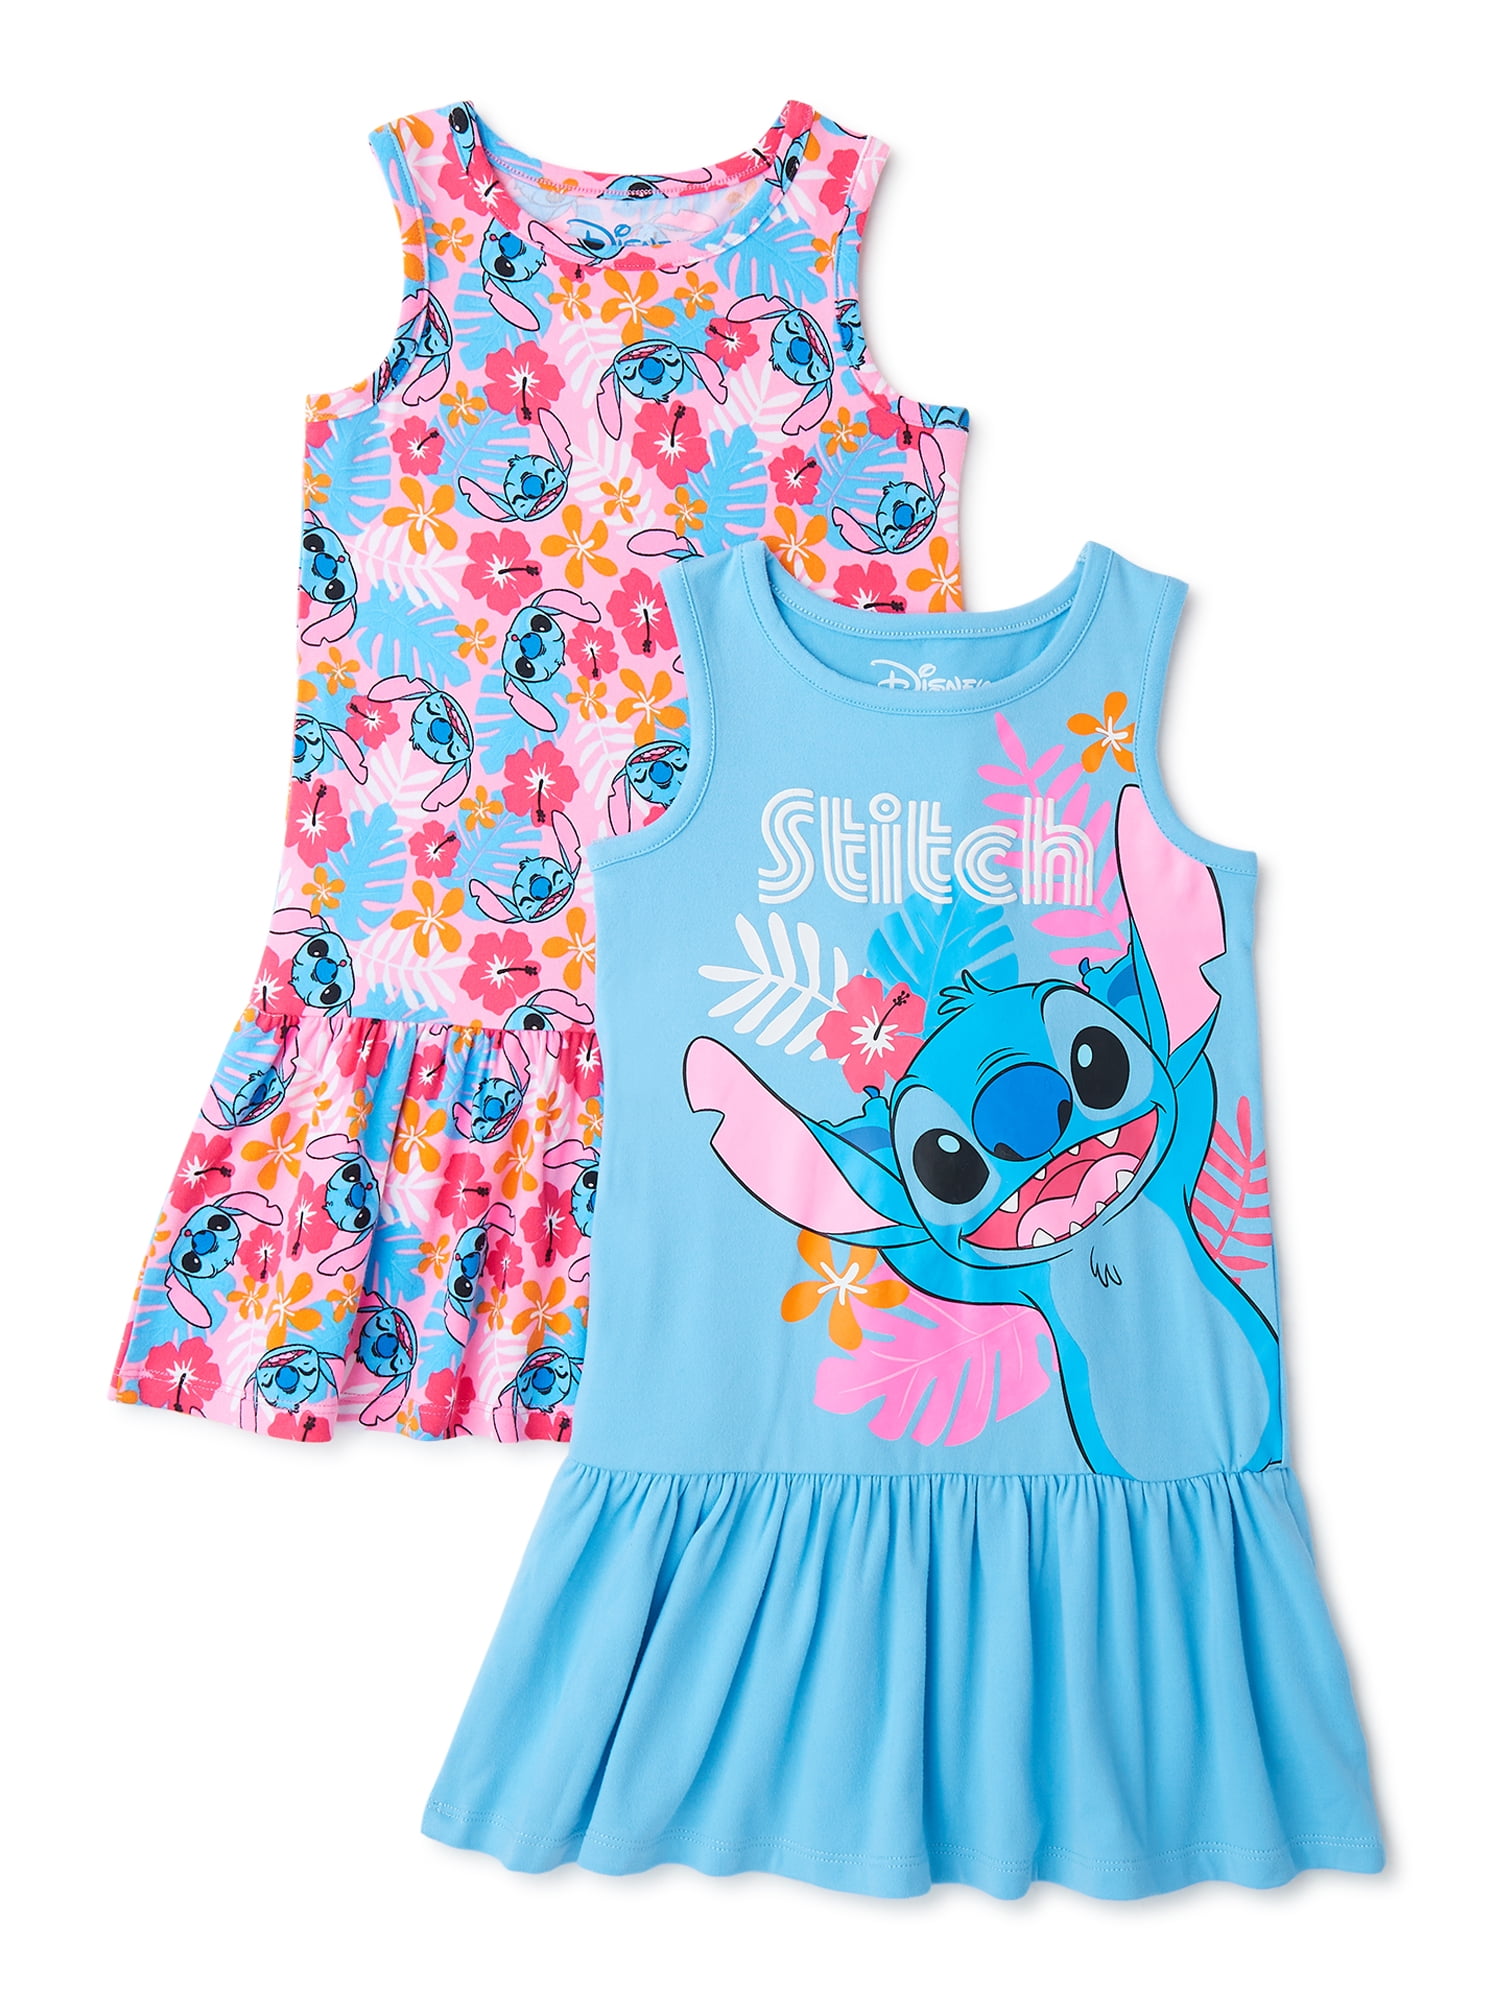 NEW Girls Boutique Unicorn Multi Print Sleeveless Ruffle Dress12-18 M 2T 3T 